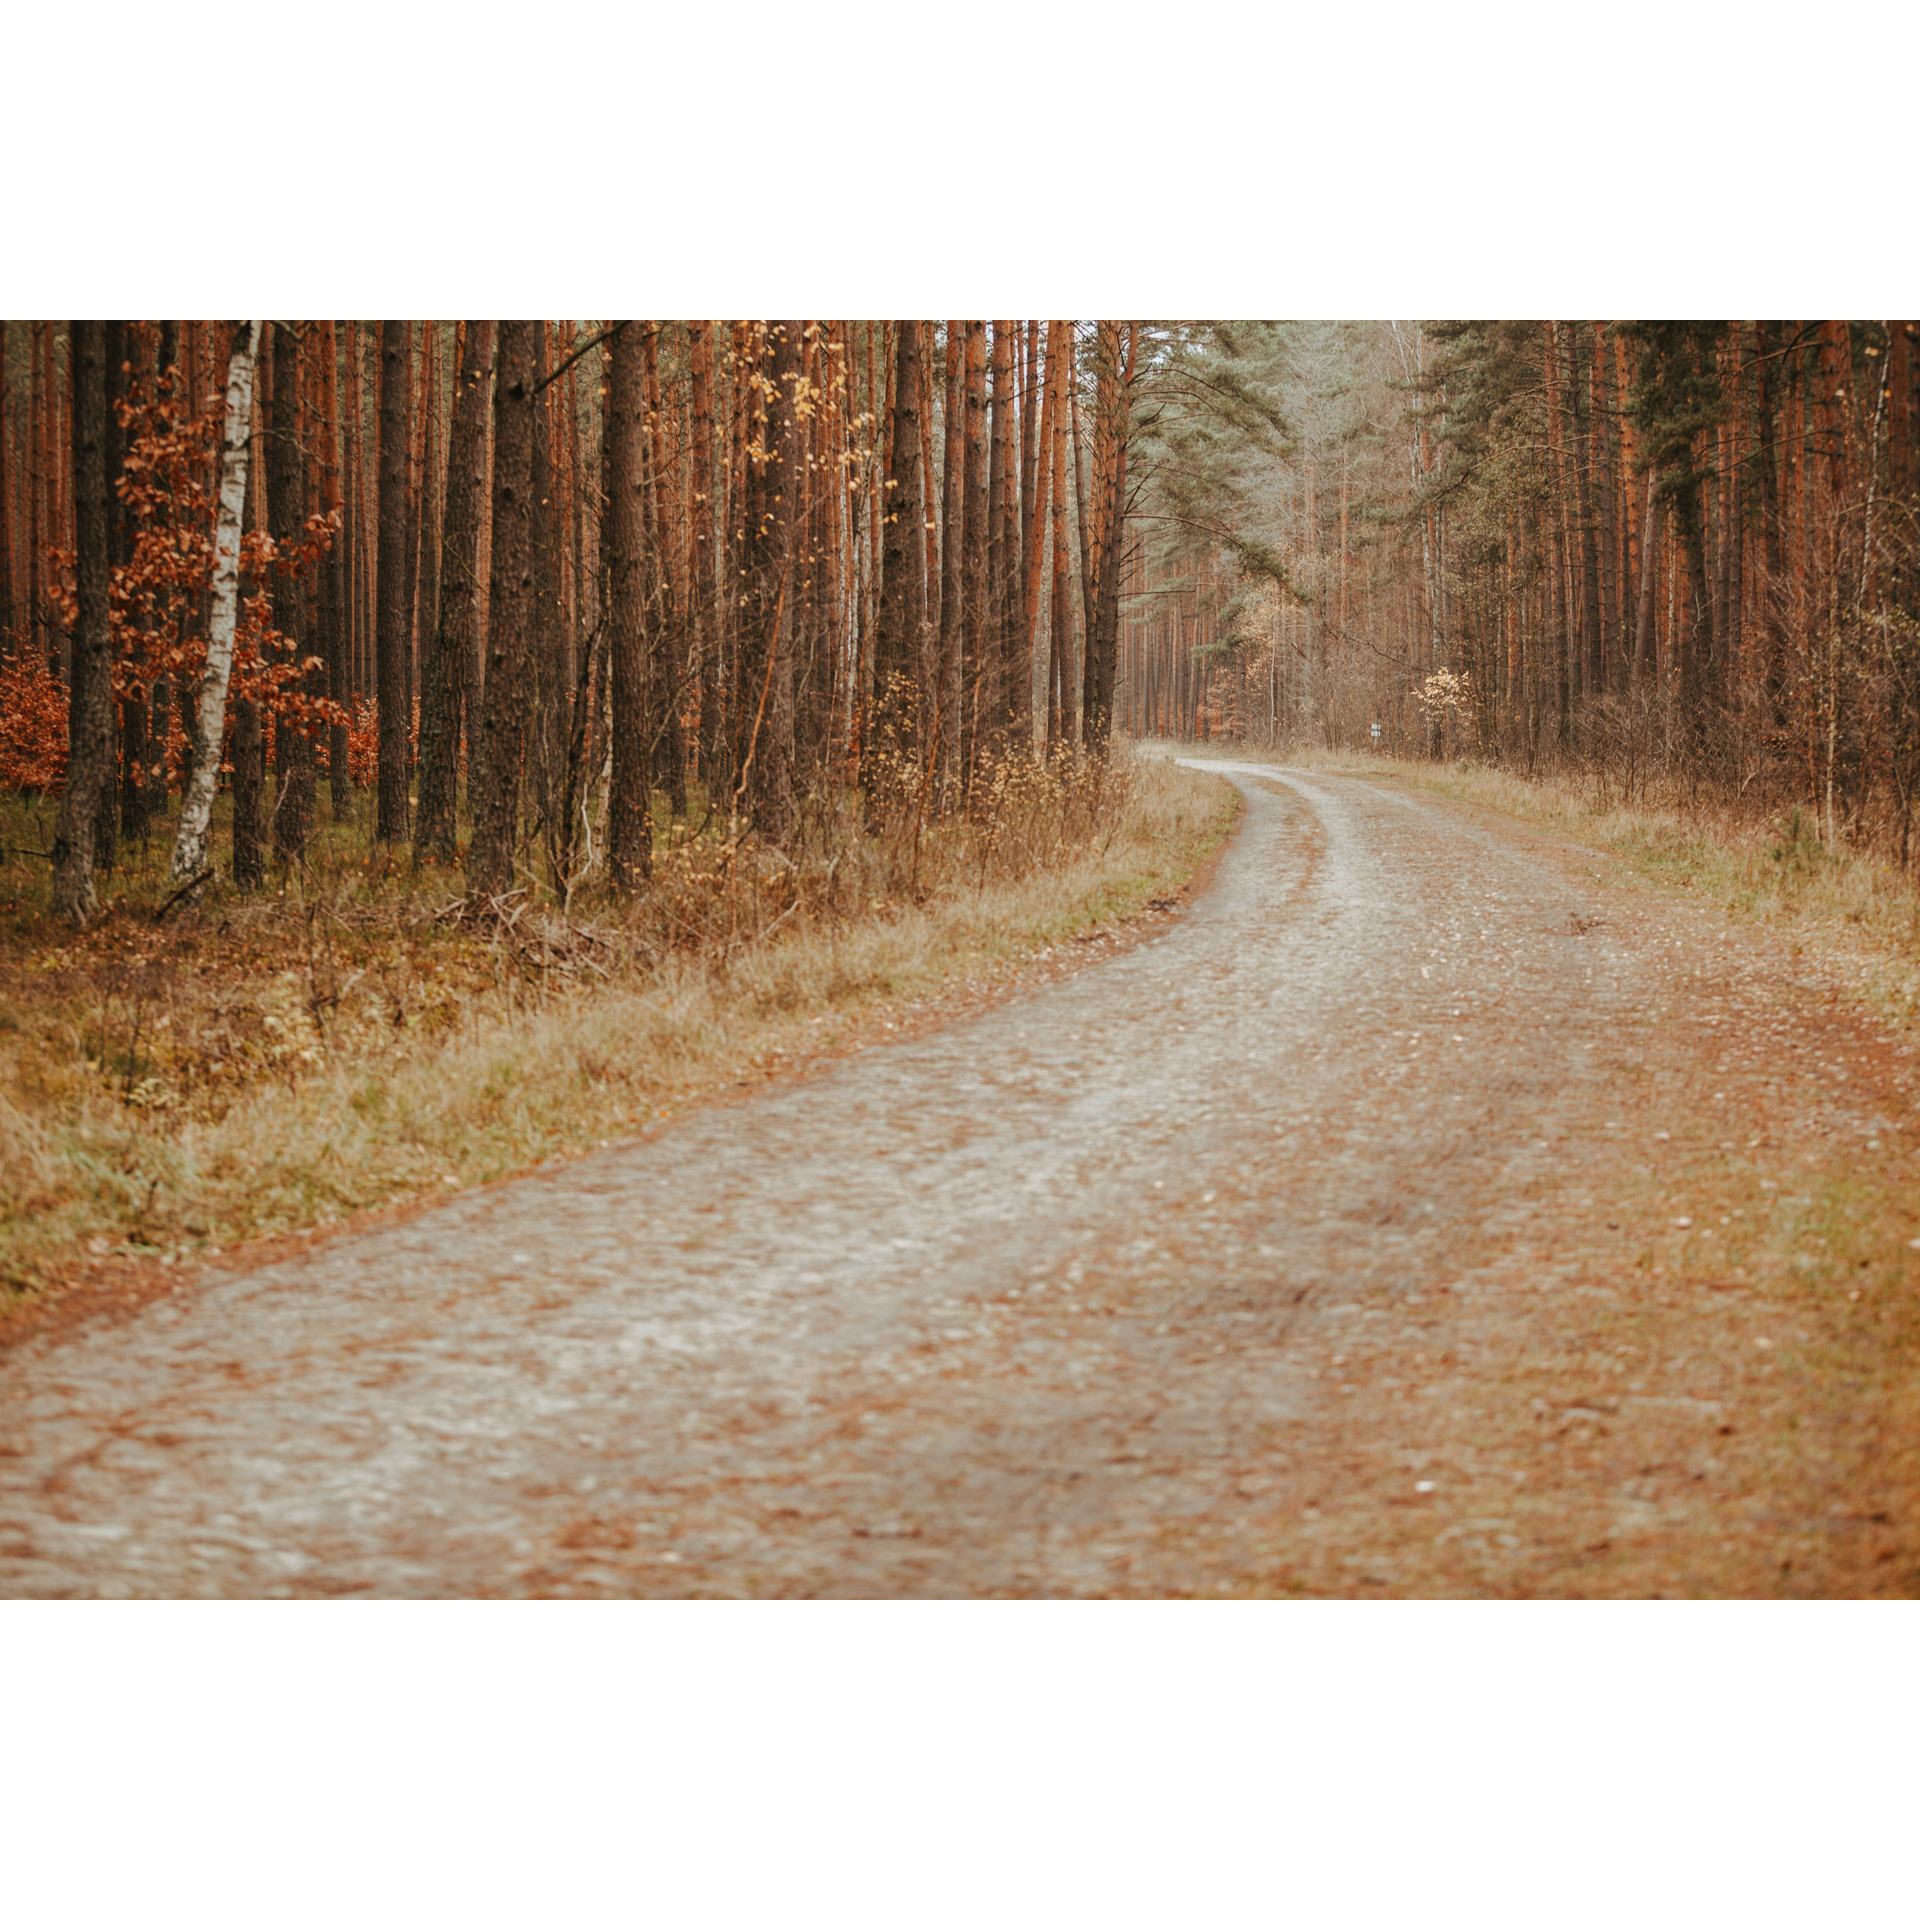 Piaszczysta droga skręcająca w lewo wśród wysokich drzew w złocisto-brązowych barwach 